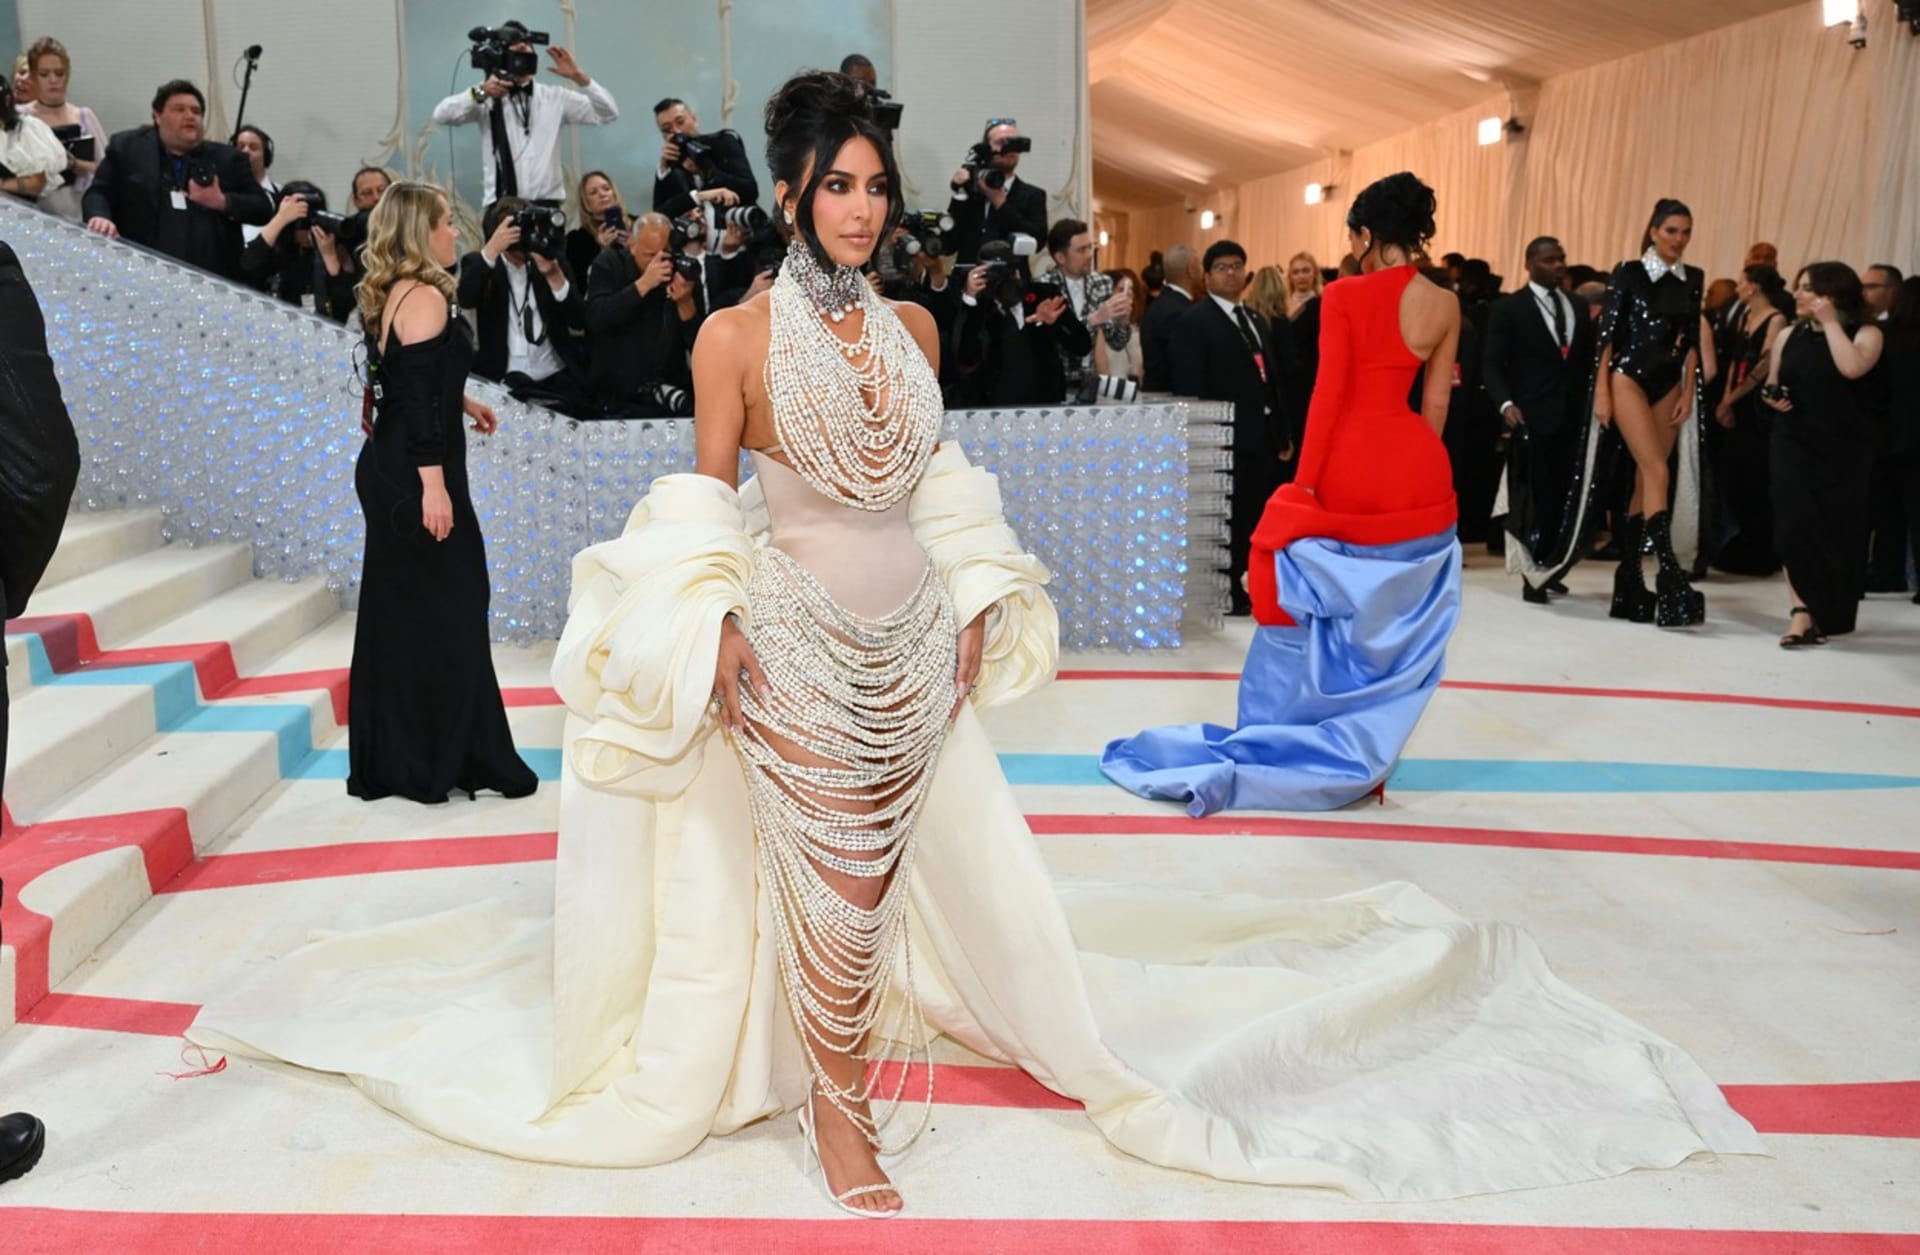 Kim Kardashian nechala v modelu z perel vyniknout svým křivkám.